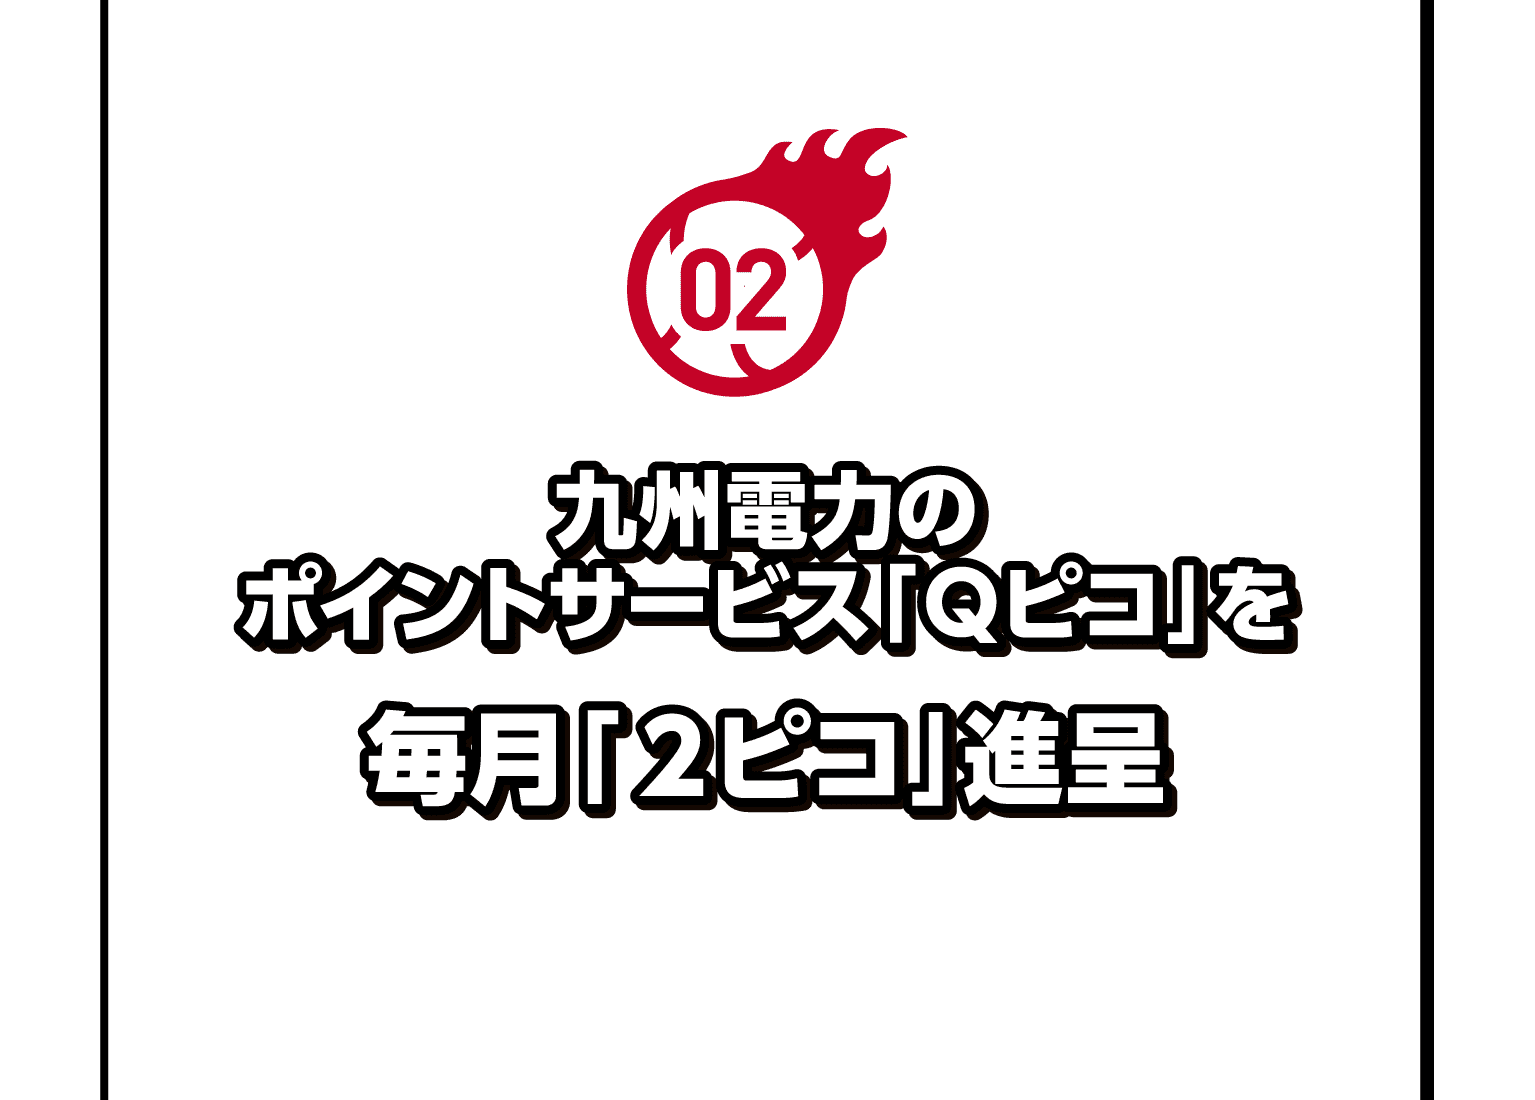 02｜九州電力のポイントサービス「Ｑピコ」を毎月「２ピコ」進呈